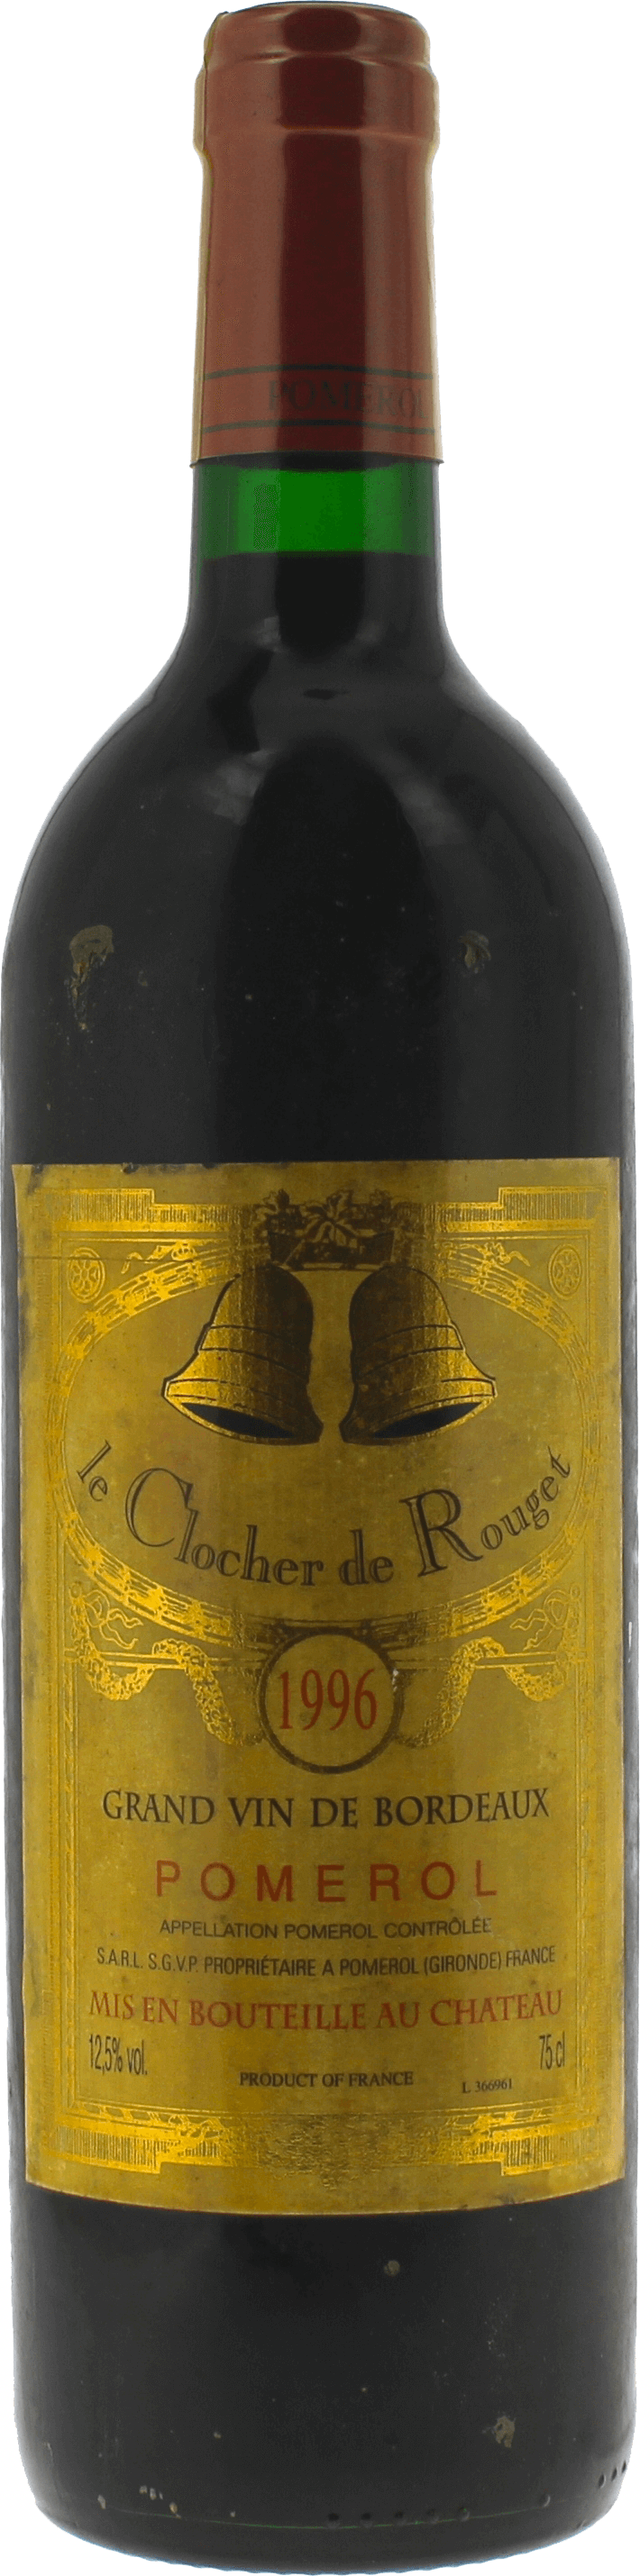 Clocher de rouget 1997  Pomerol, Bordeaux rouge